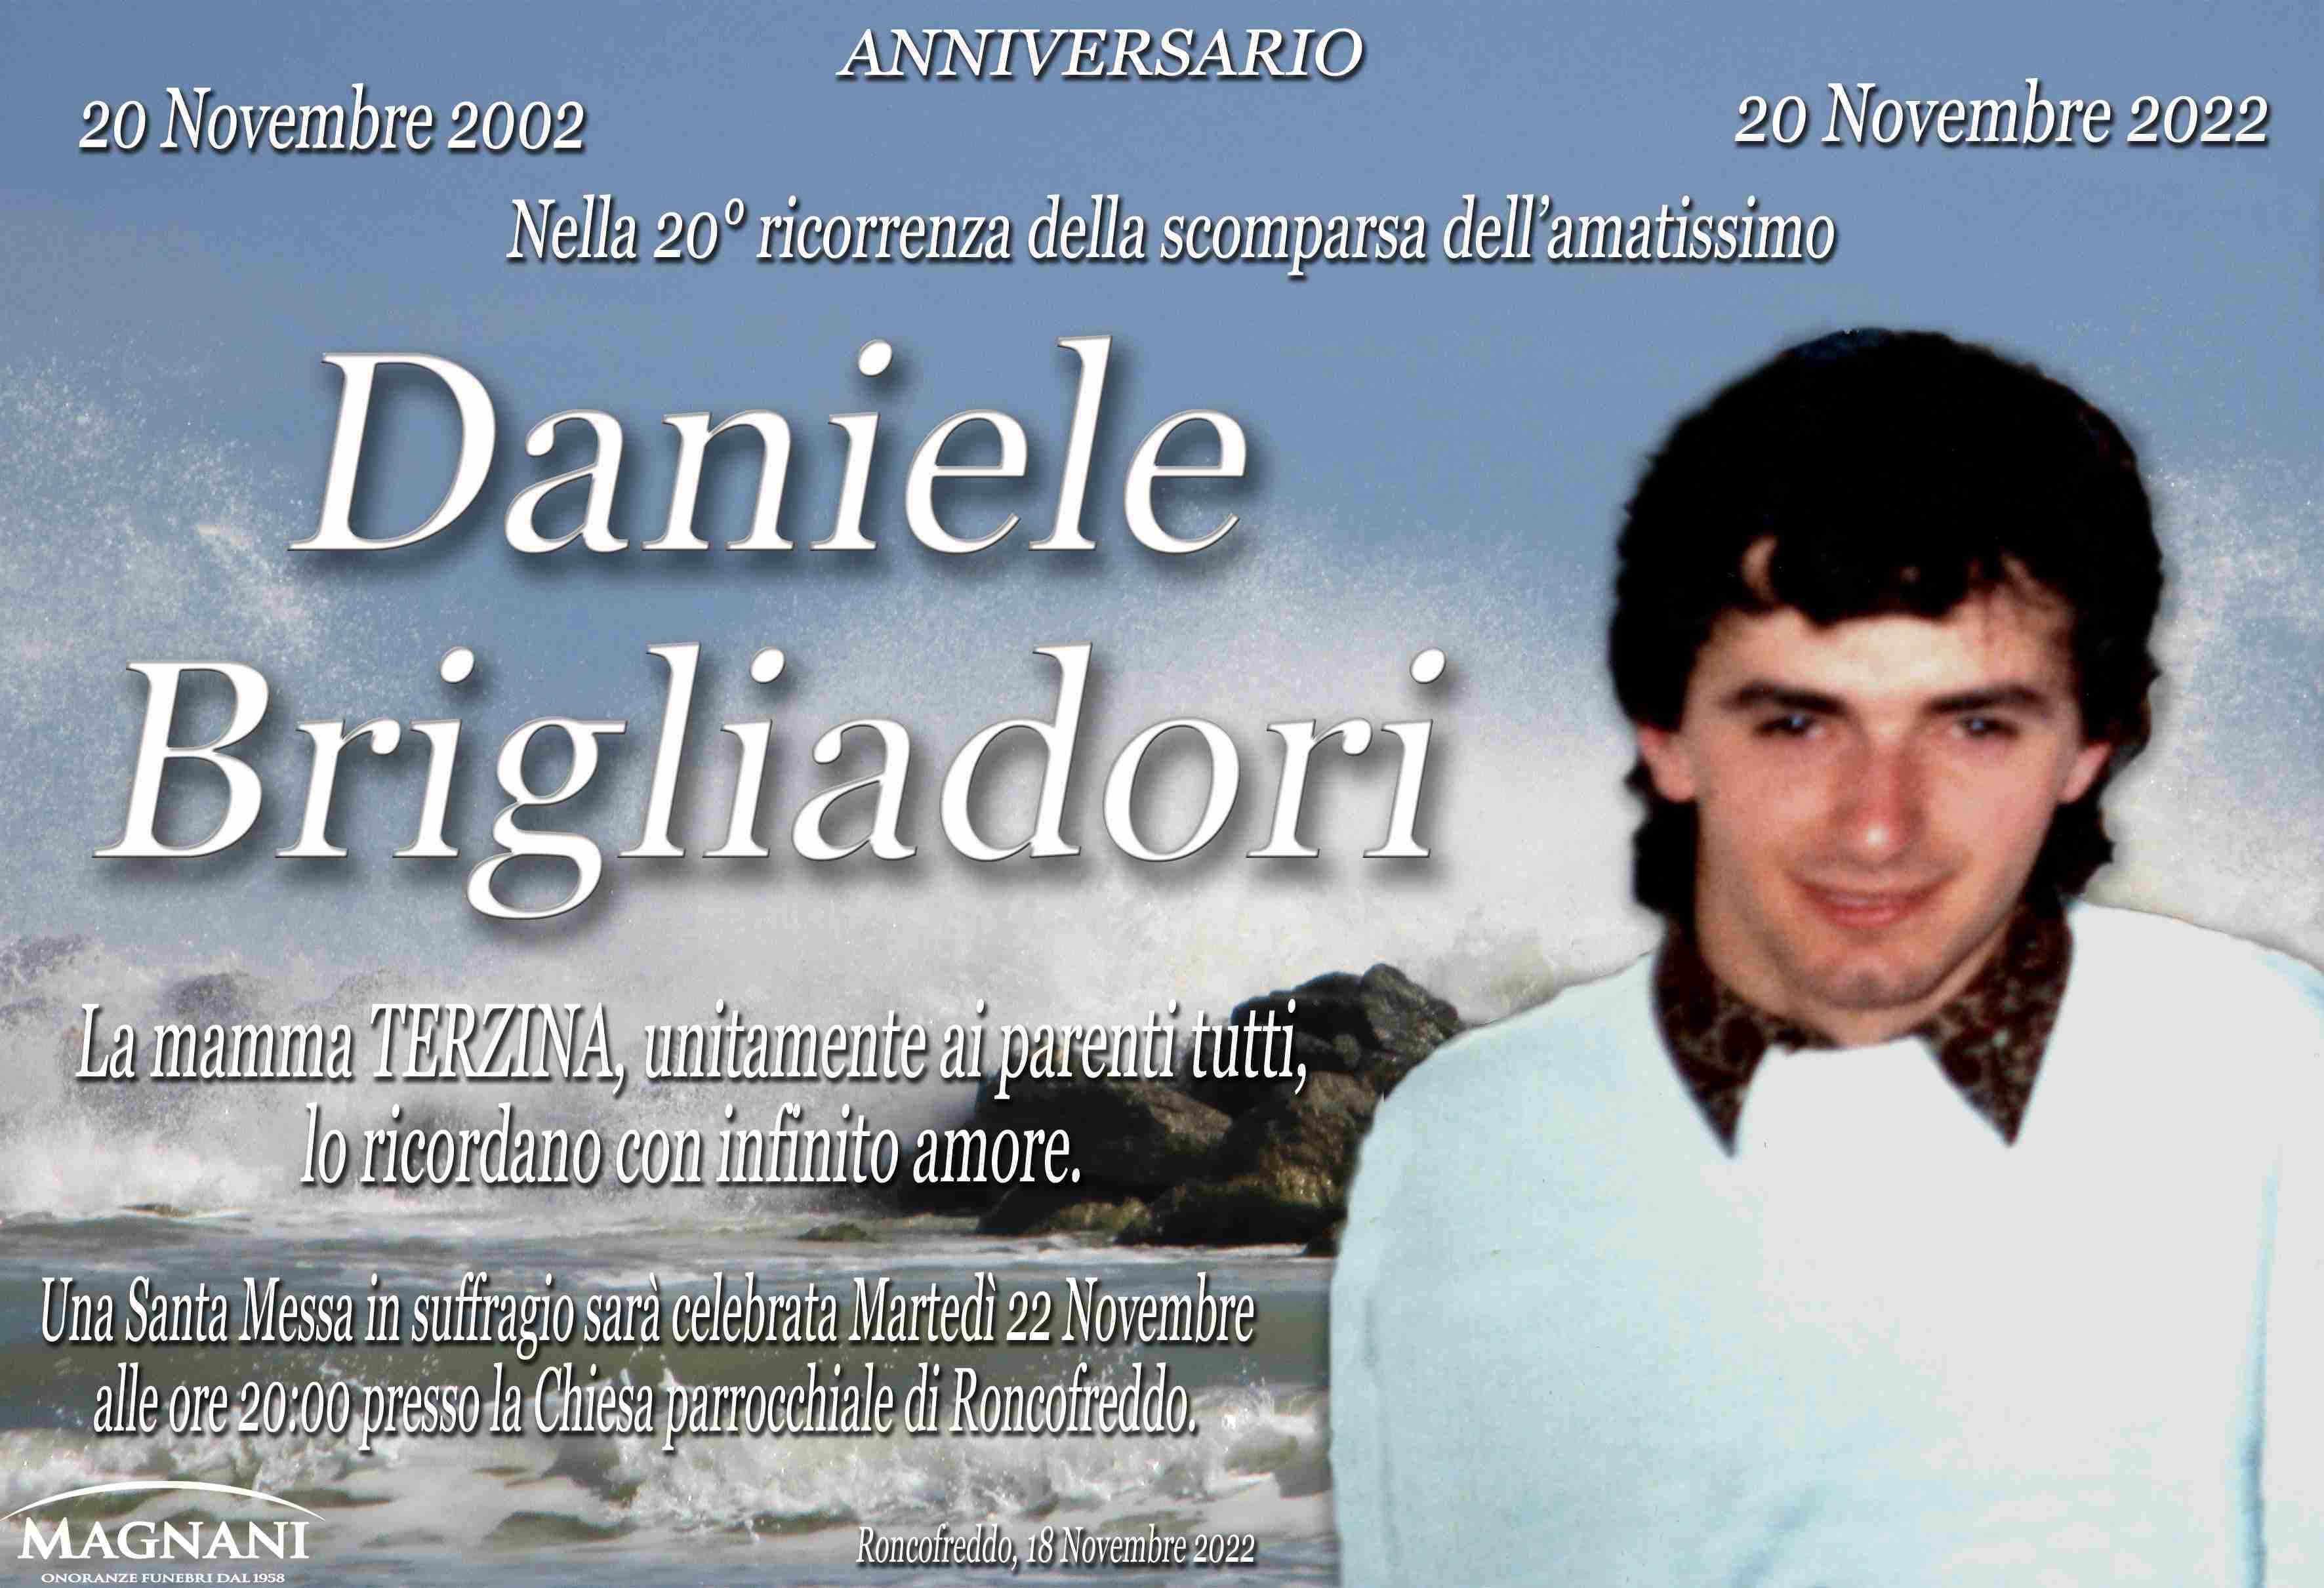 Daniele Brigliaodri